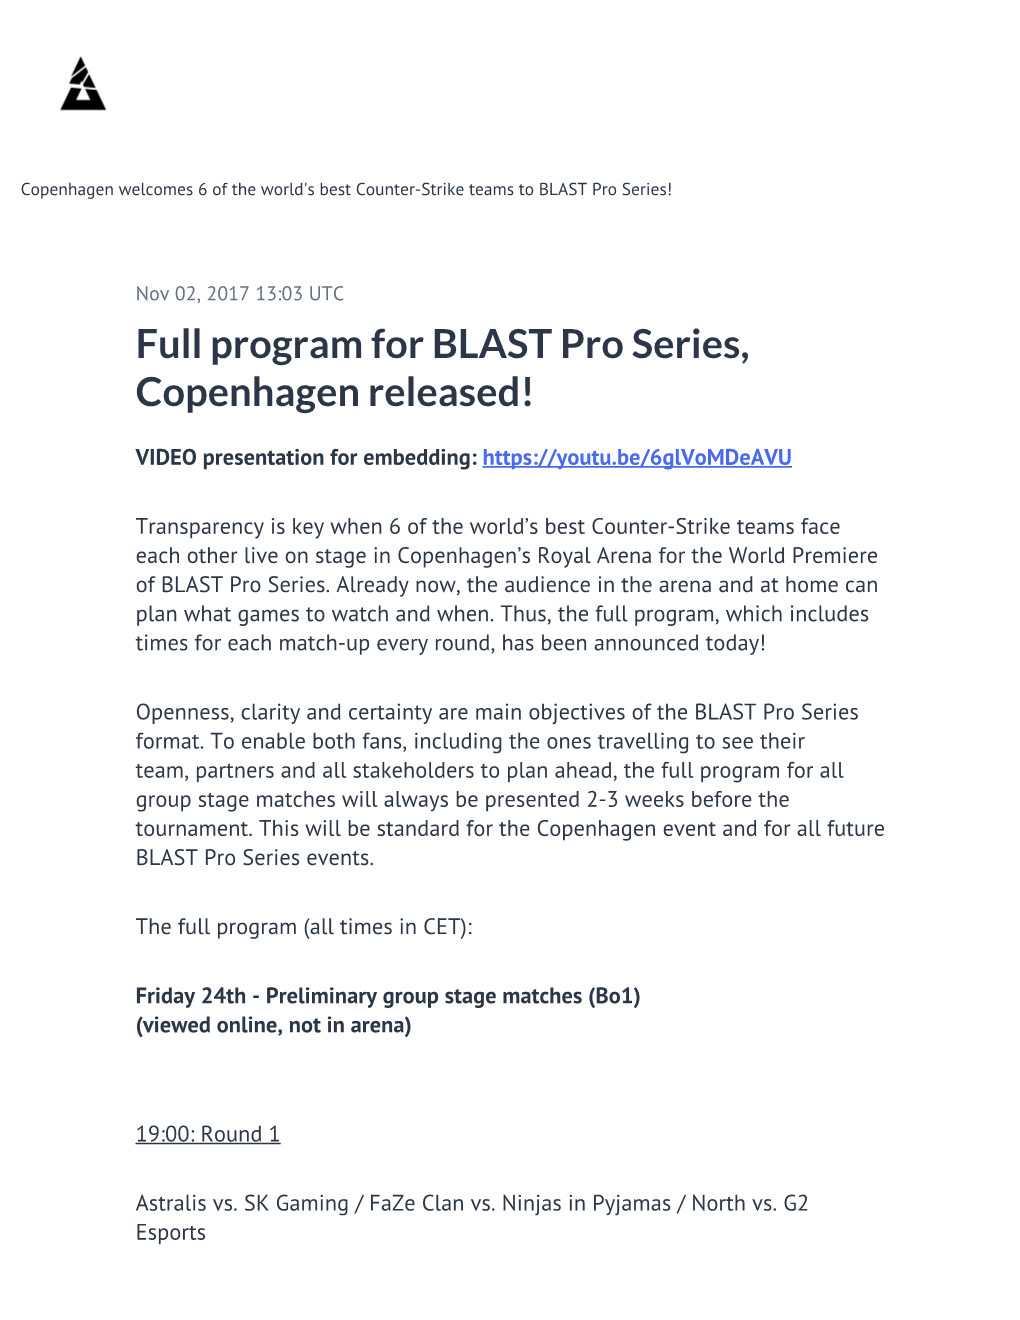 Full Program for BLAST Pro Series, Copenhagen Released!